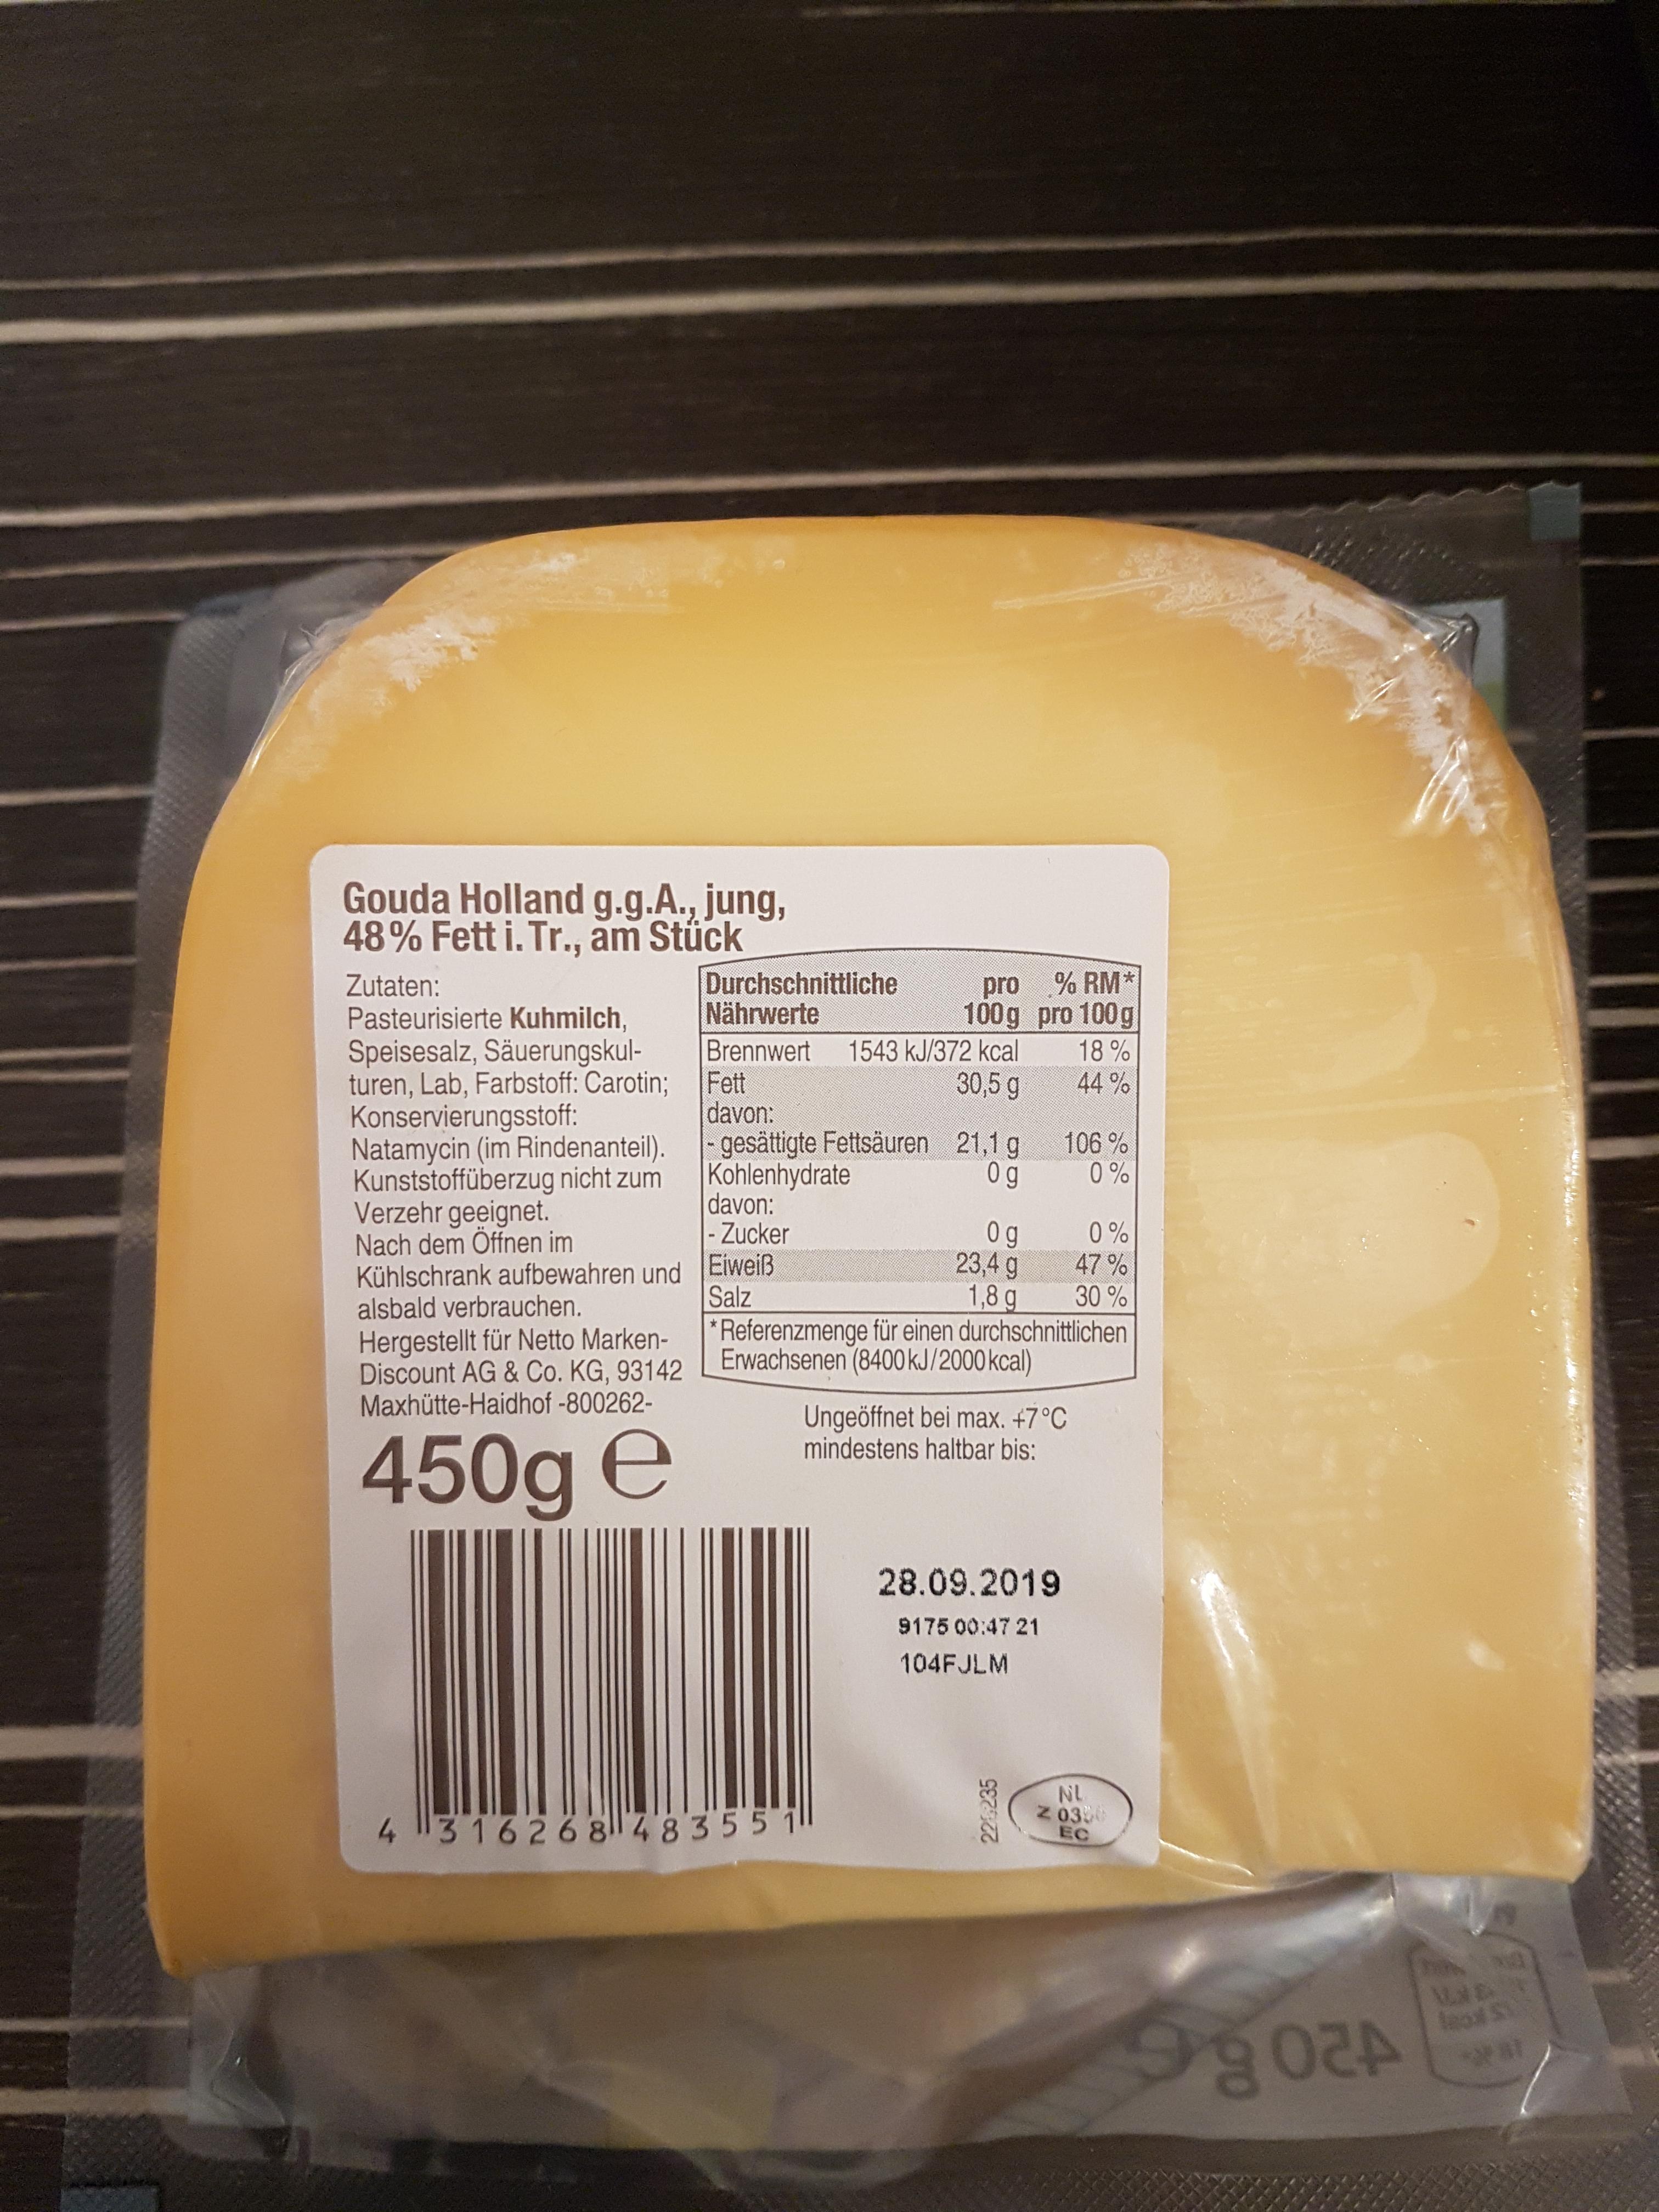 Ist dieser Gouda-Käse noch gut, wenn das MHD seit 2 Monaten abgelaufen ...